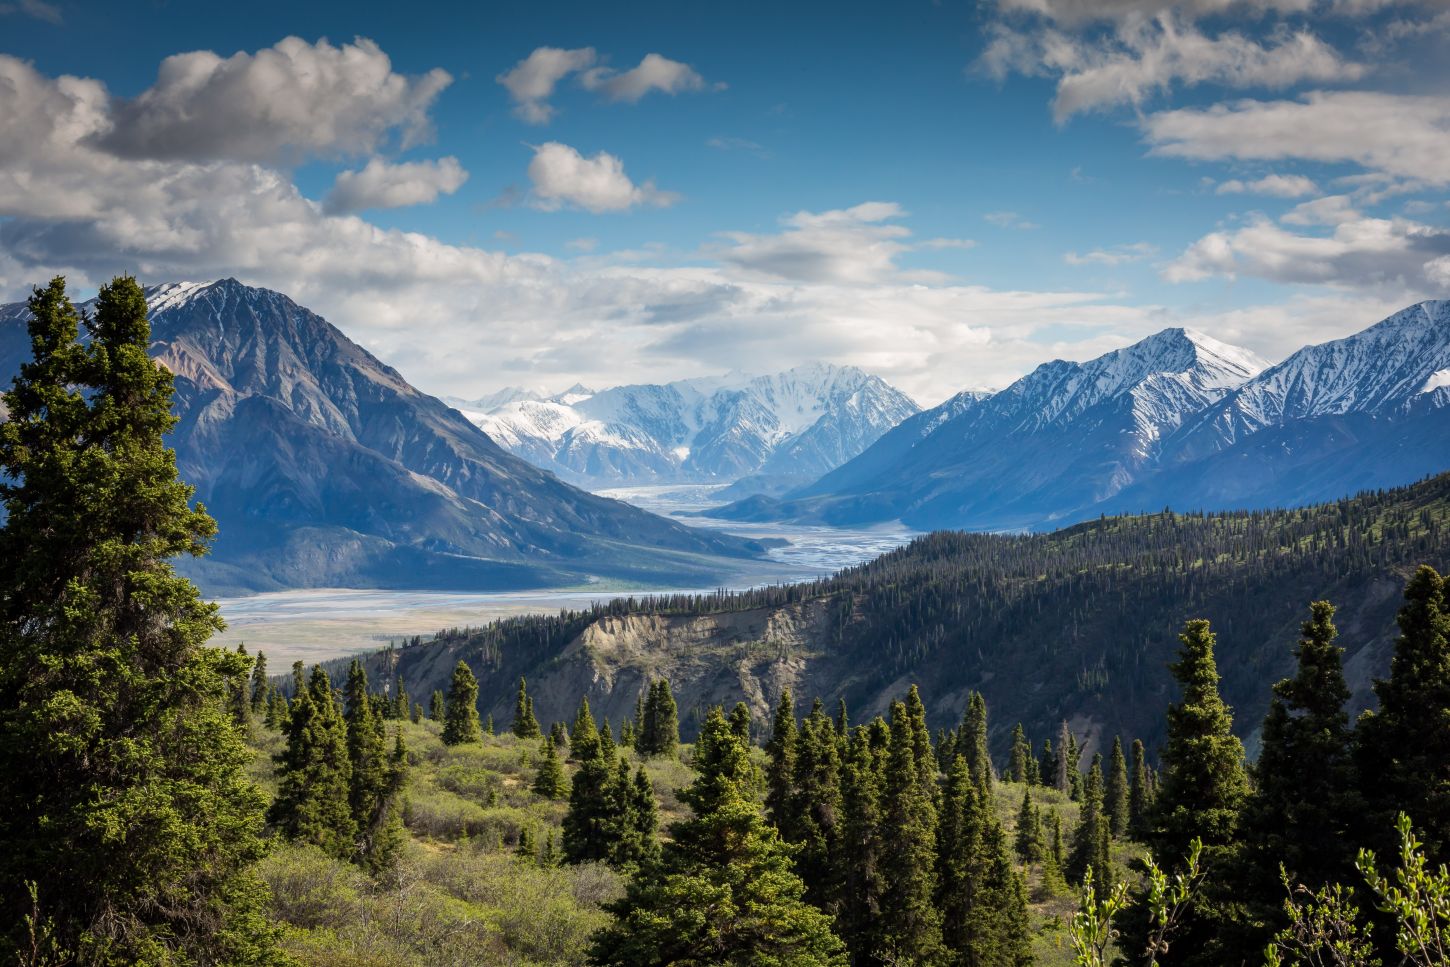 Yukon - Kluane National Park and Preserve in Kanada